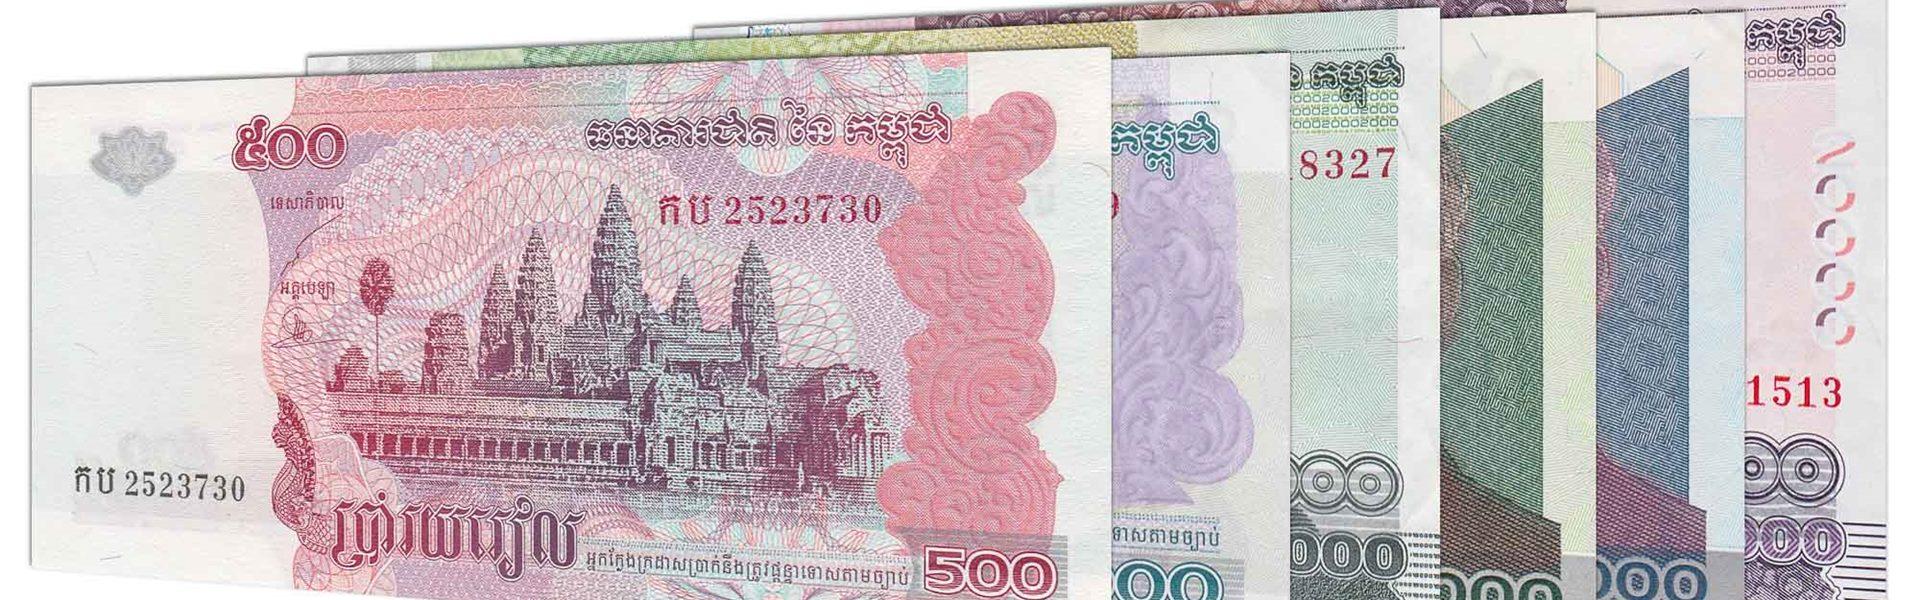 Valute e Cambi in Cambogia